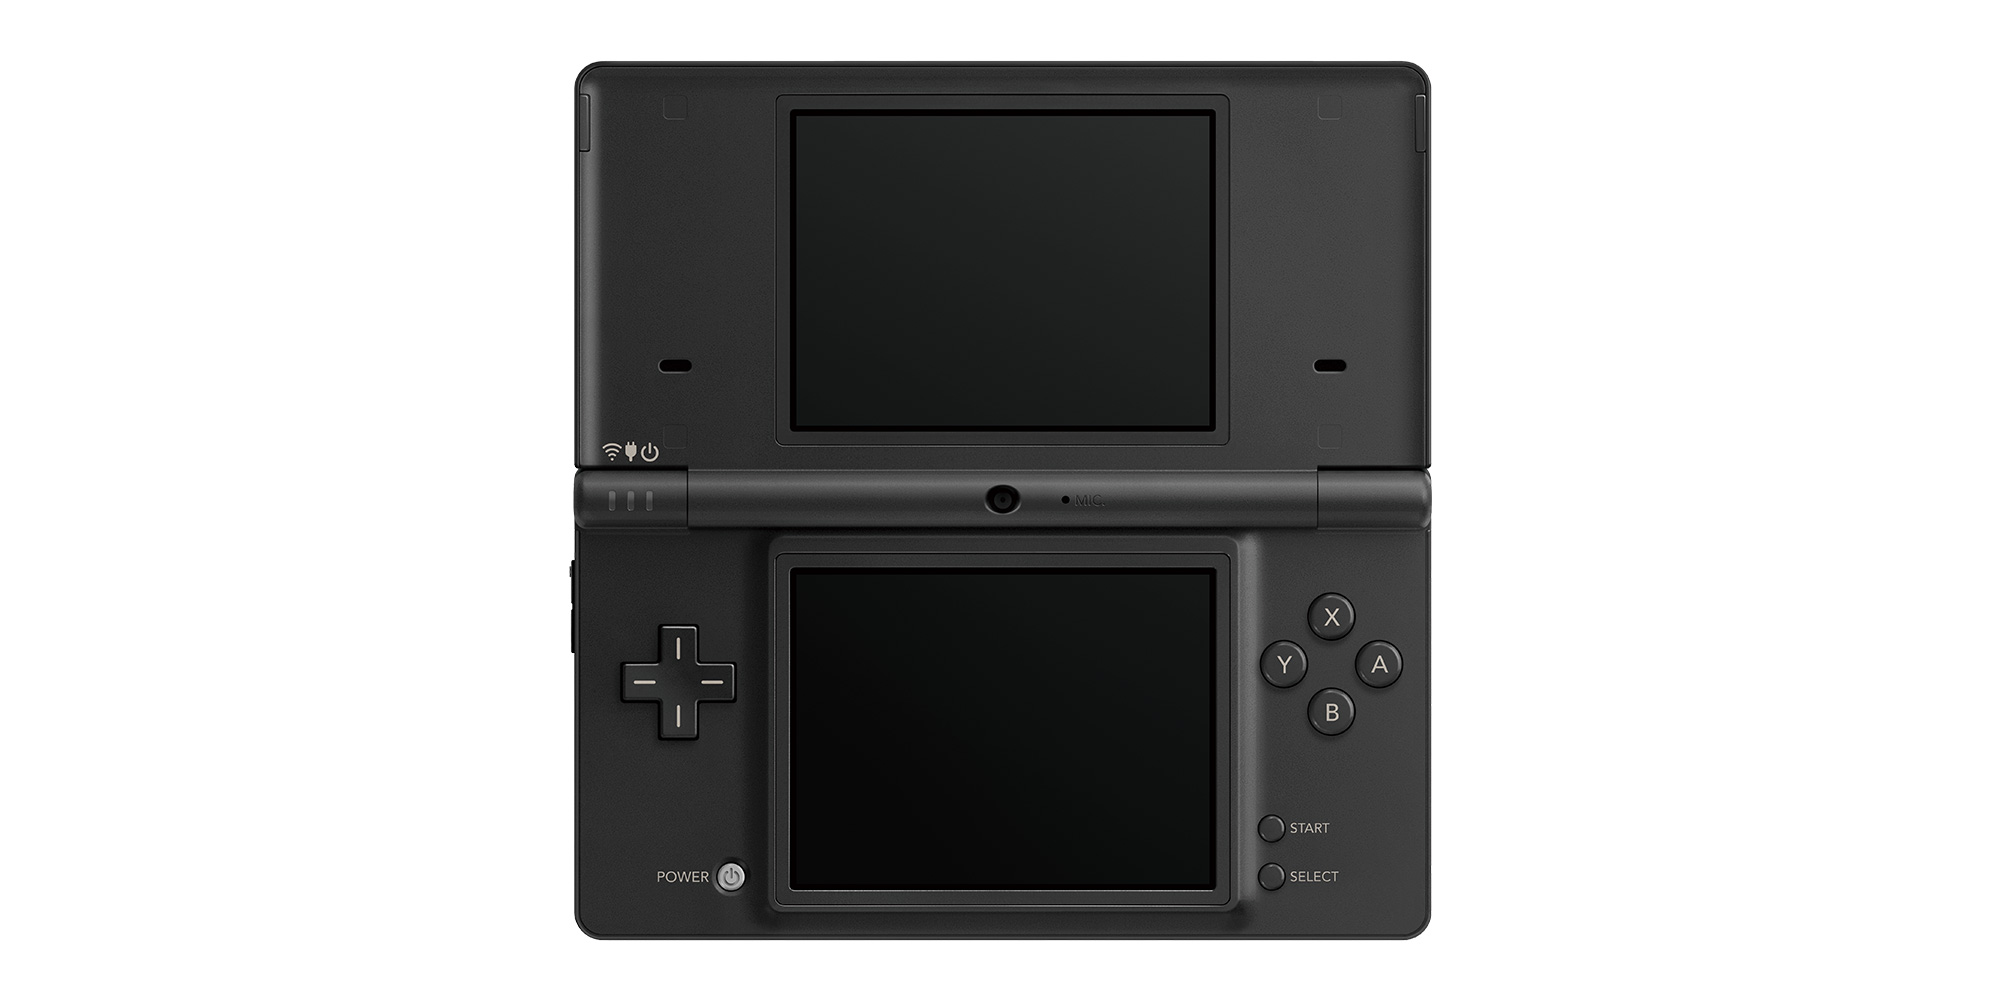 Connectique et chargeur console Nintendo 3DS BLOC ALIMENTATION